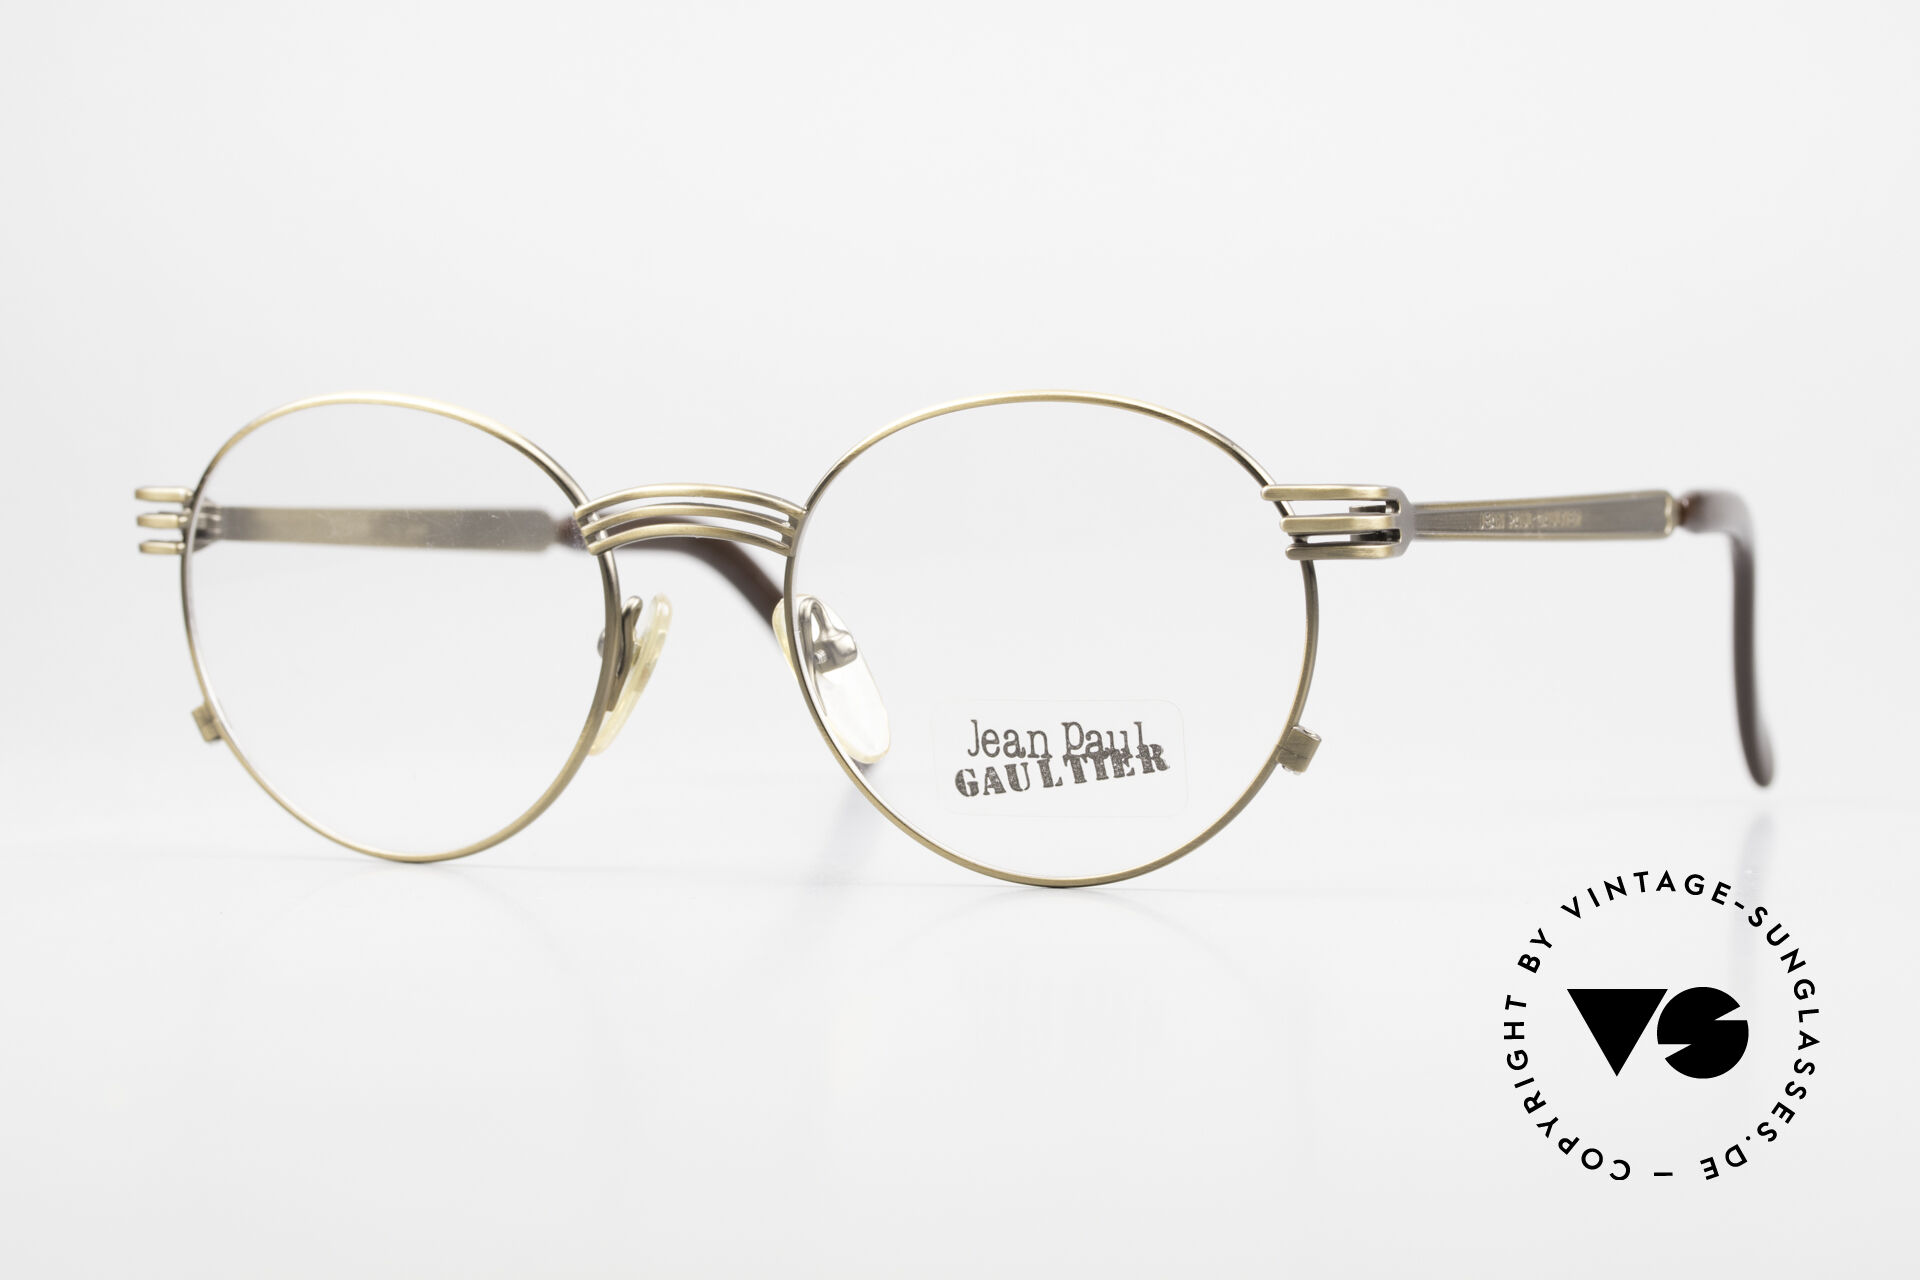 Jean Paul Gaultier 55-3174 Designer Vintage Glasses